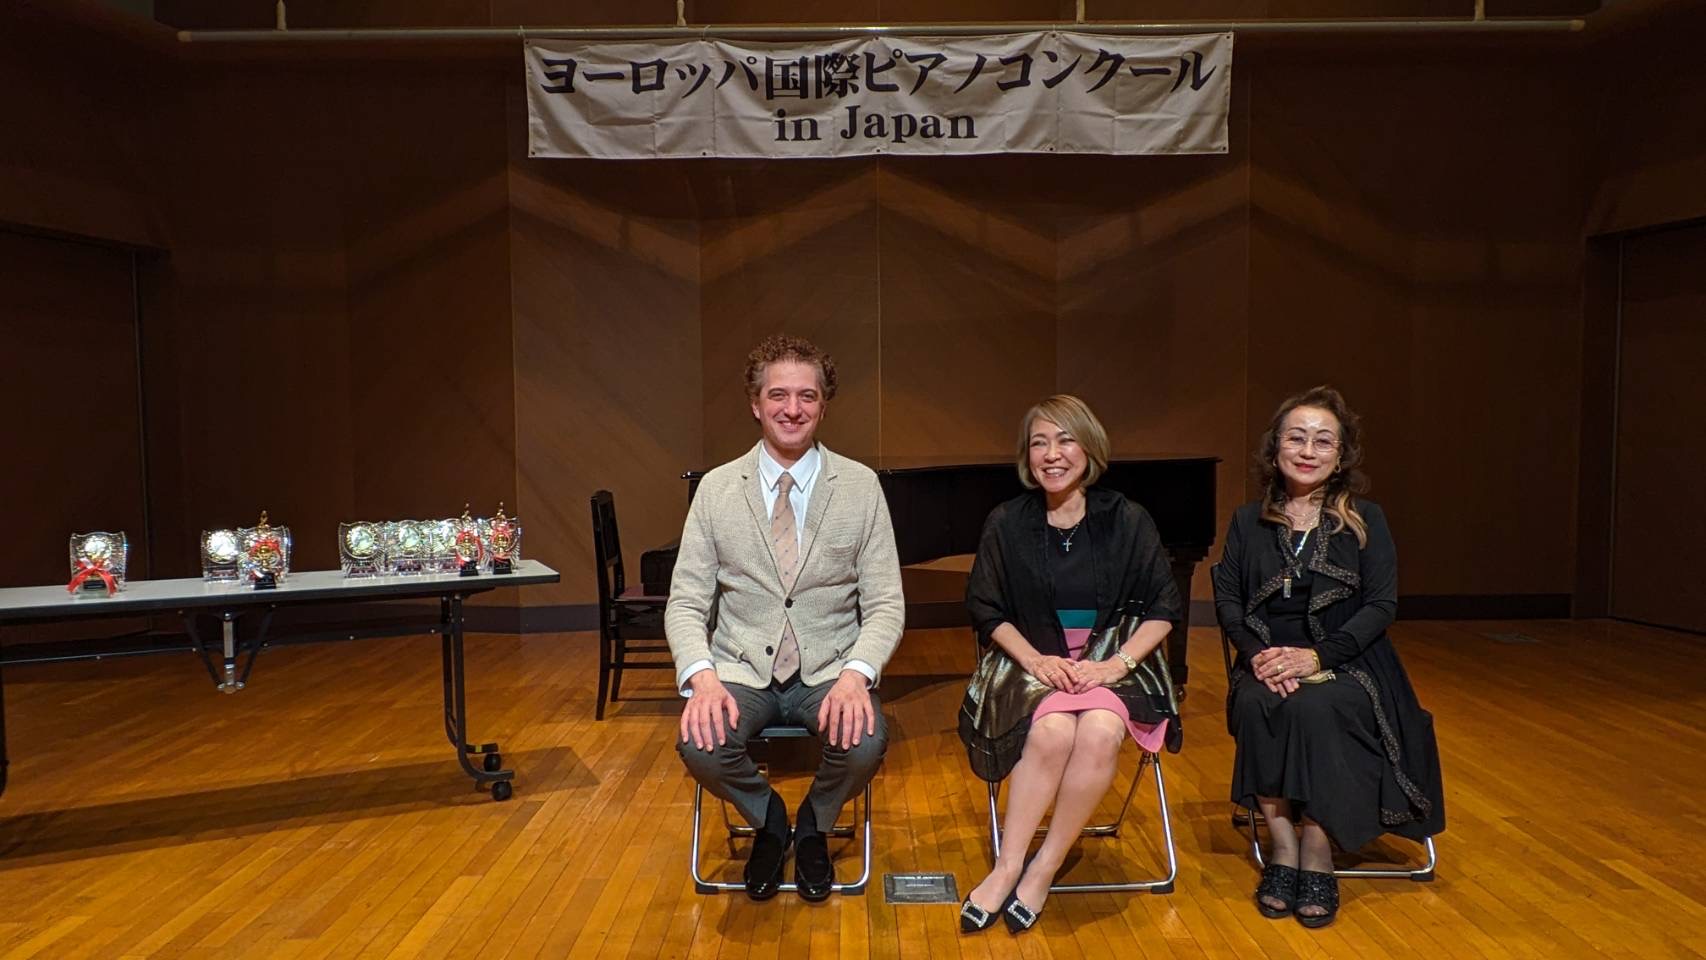 第14回ヨーロッパ国際ピアノコンクールin Japan 大阪地区大会